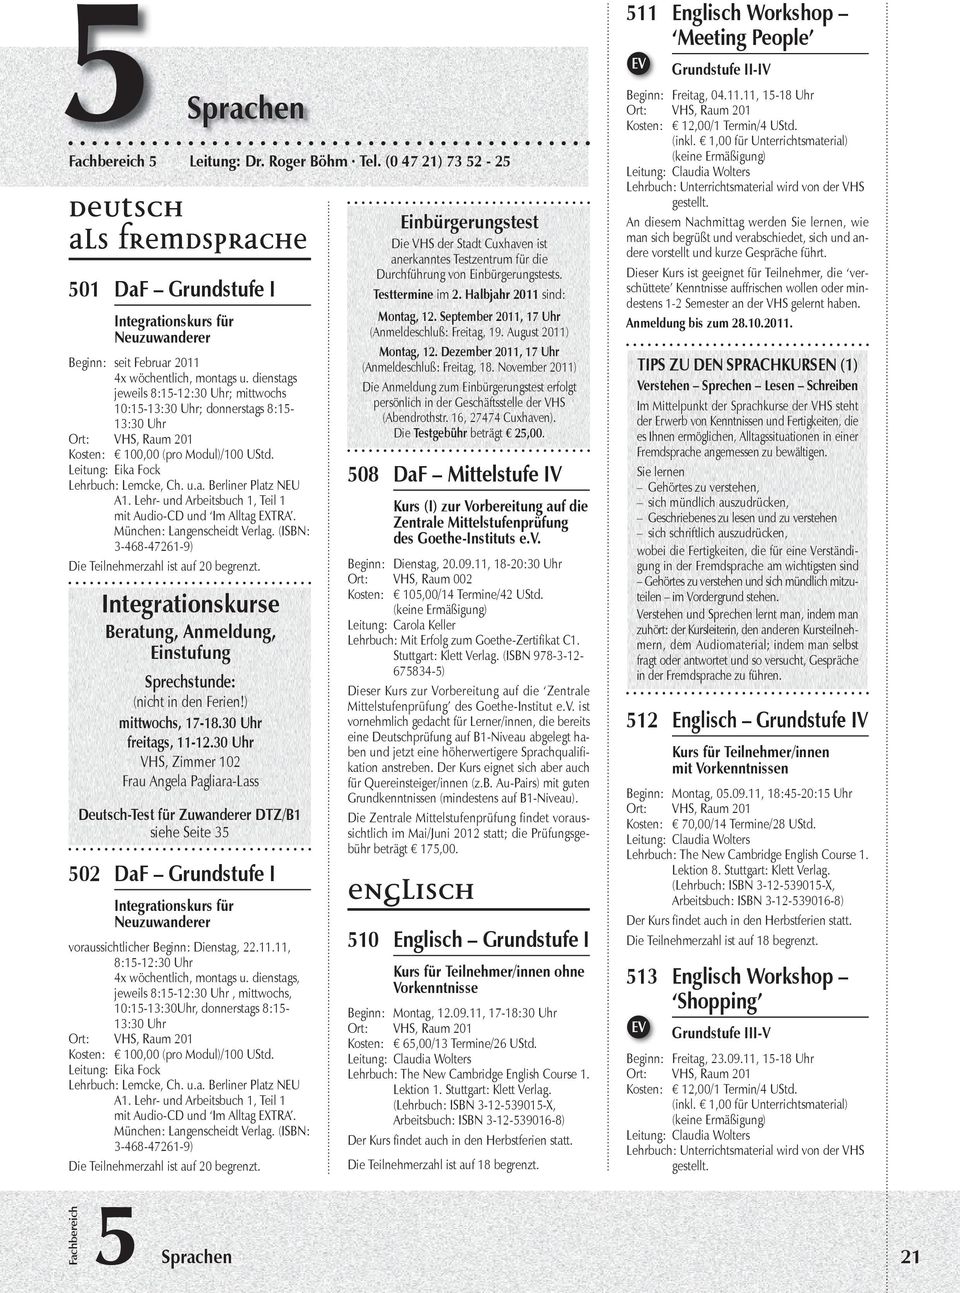 Lehr- und Arbeitsbuch 1, Teil 1 mit Audio-CD und Im Alltag EXTRA. München: Langenscheidt Verlag.